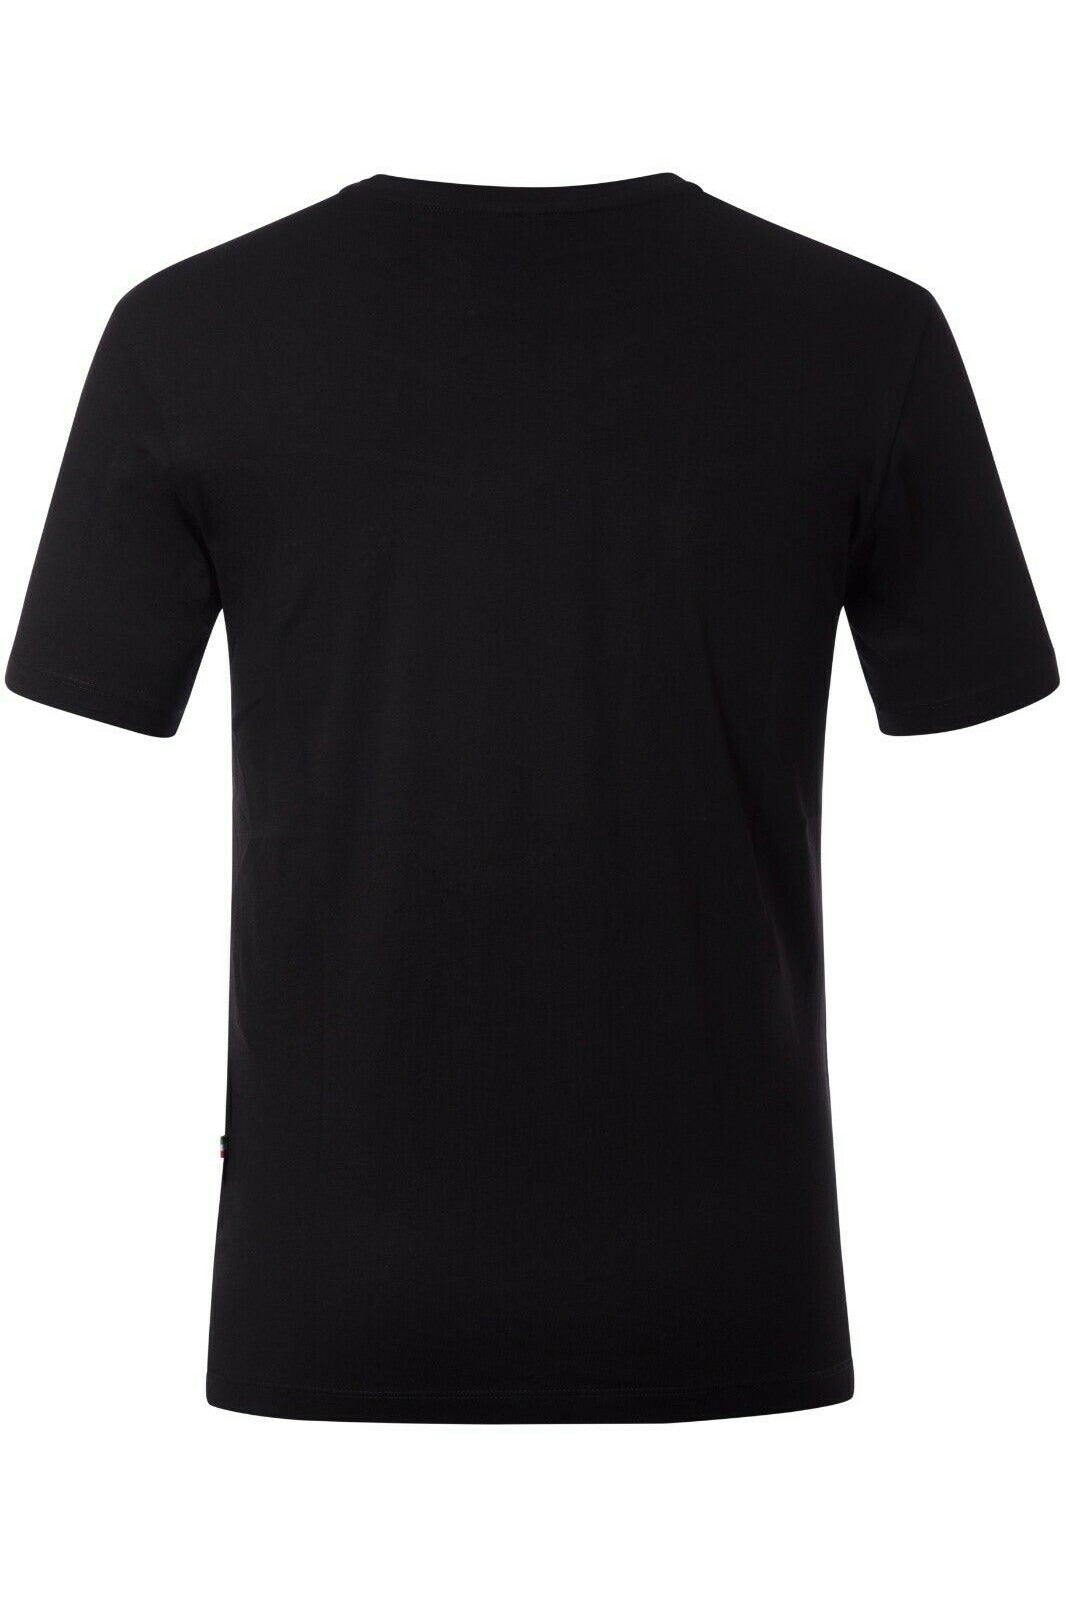 Philipp Plein  Men T-Shirt Color Black Material Cotton